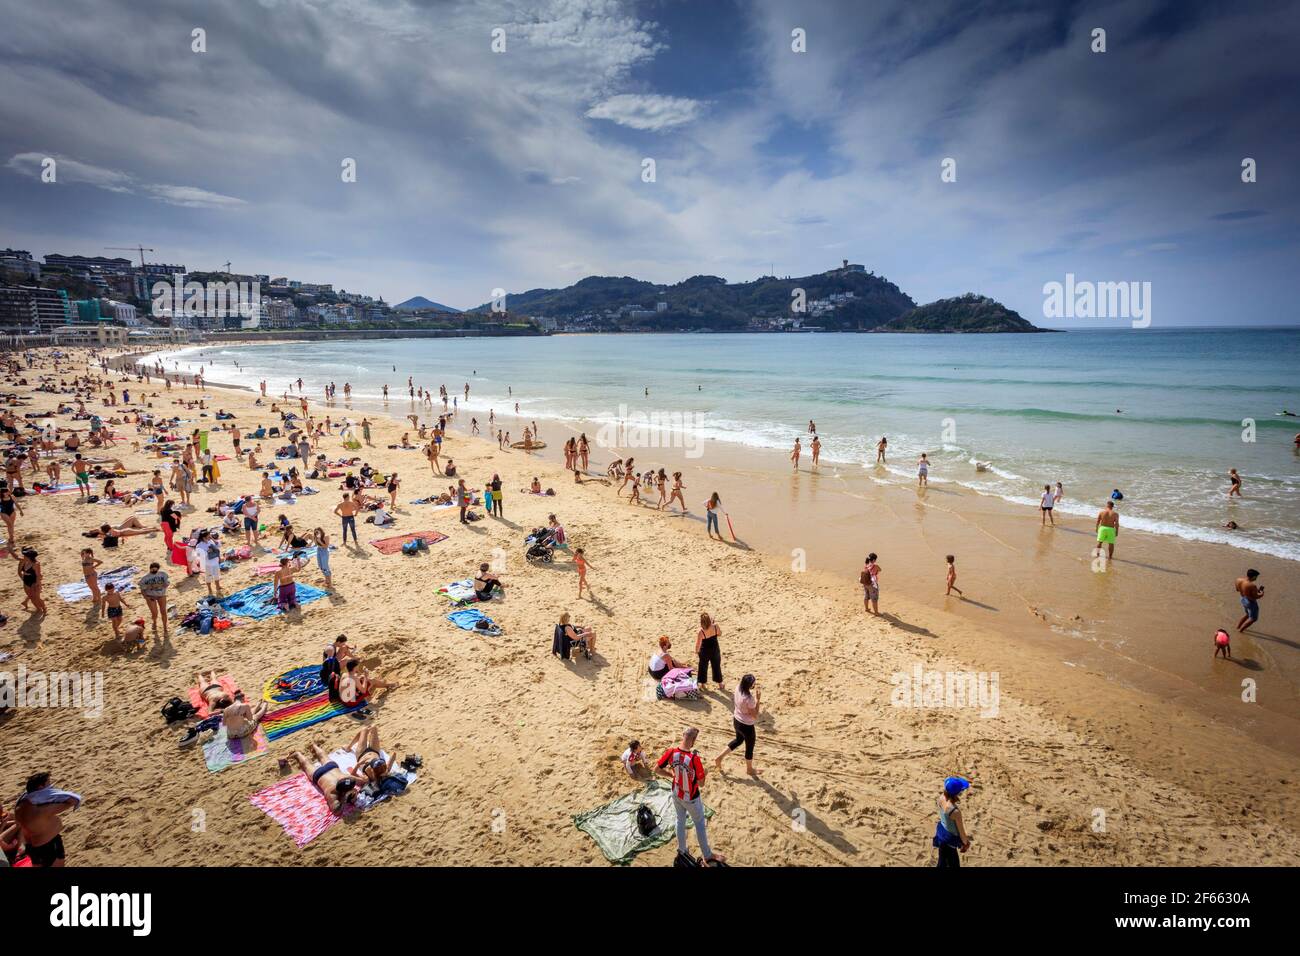 Les baigneurs de soleil apprécient la semaine de Pâques sur la plage de la Concha, dans la ville balnéaire de San Sebastian, Donostia, pays Basque. Espagne. Banque D'Images